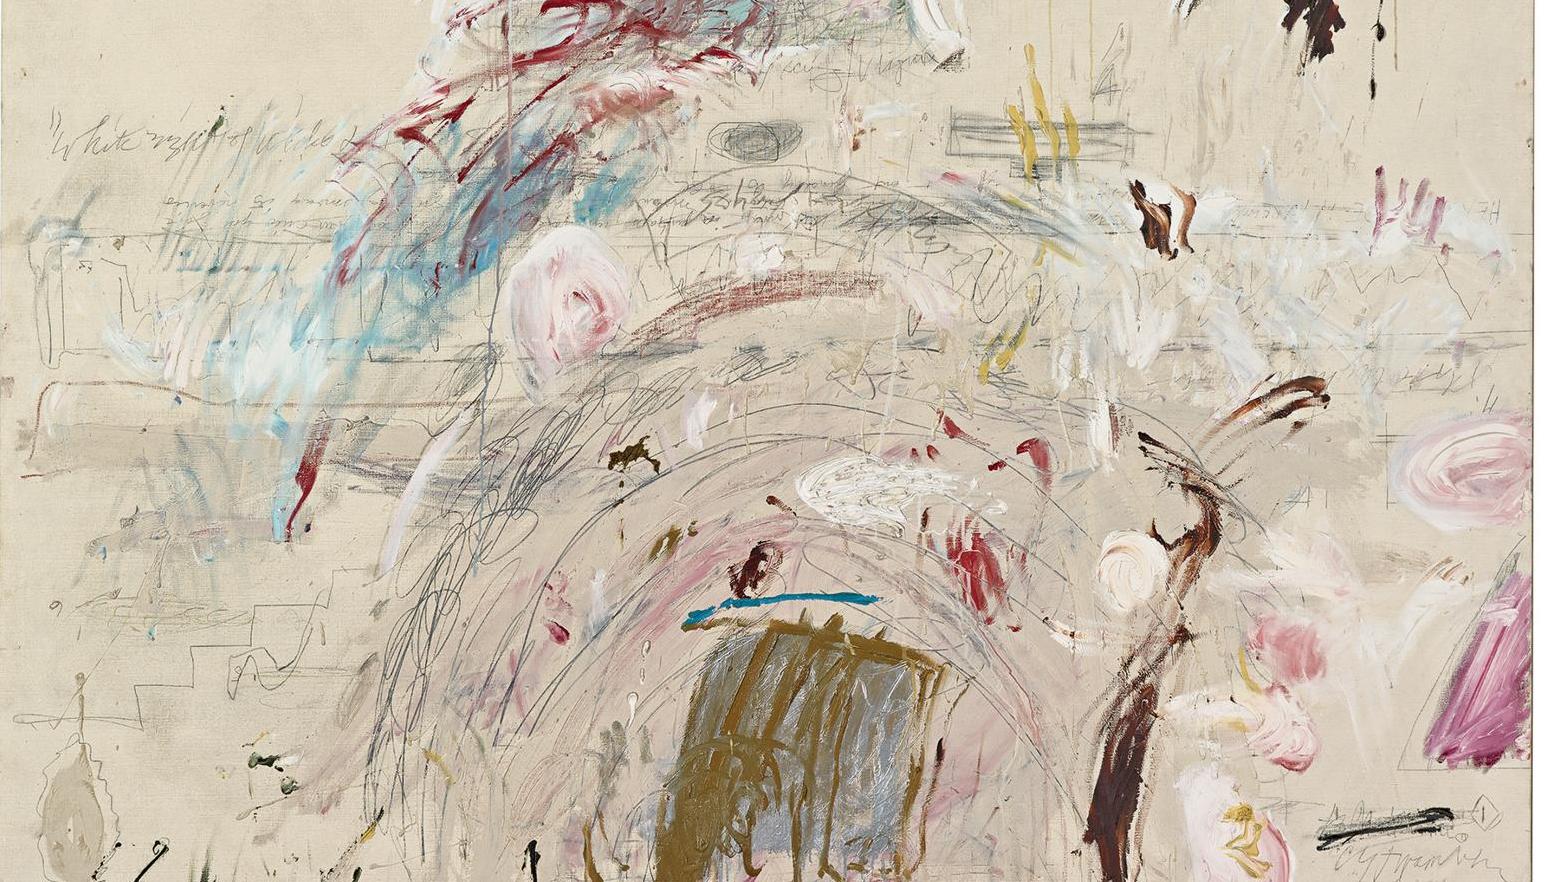 Cy Twombly (1928-2011), School of Athens, 1961, huile, peinture industrielle, crayon... Cy Twombly et la France, sous le signe de l’antique